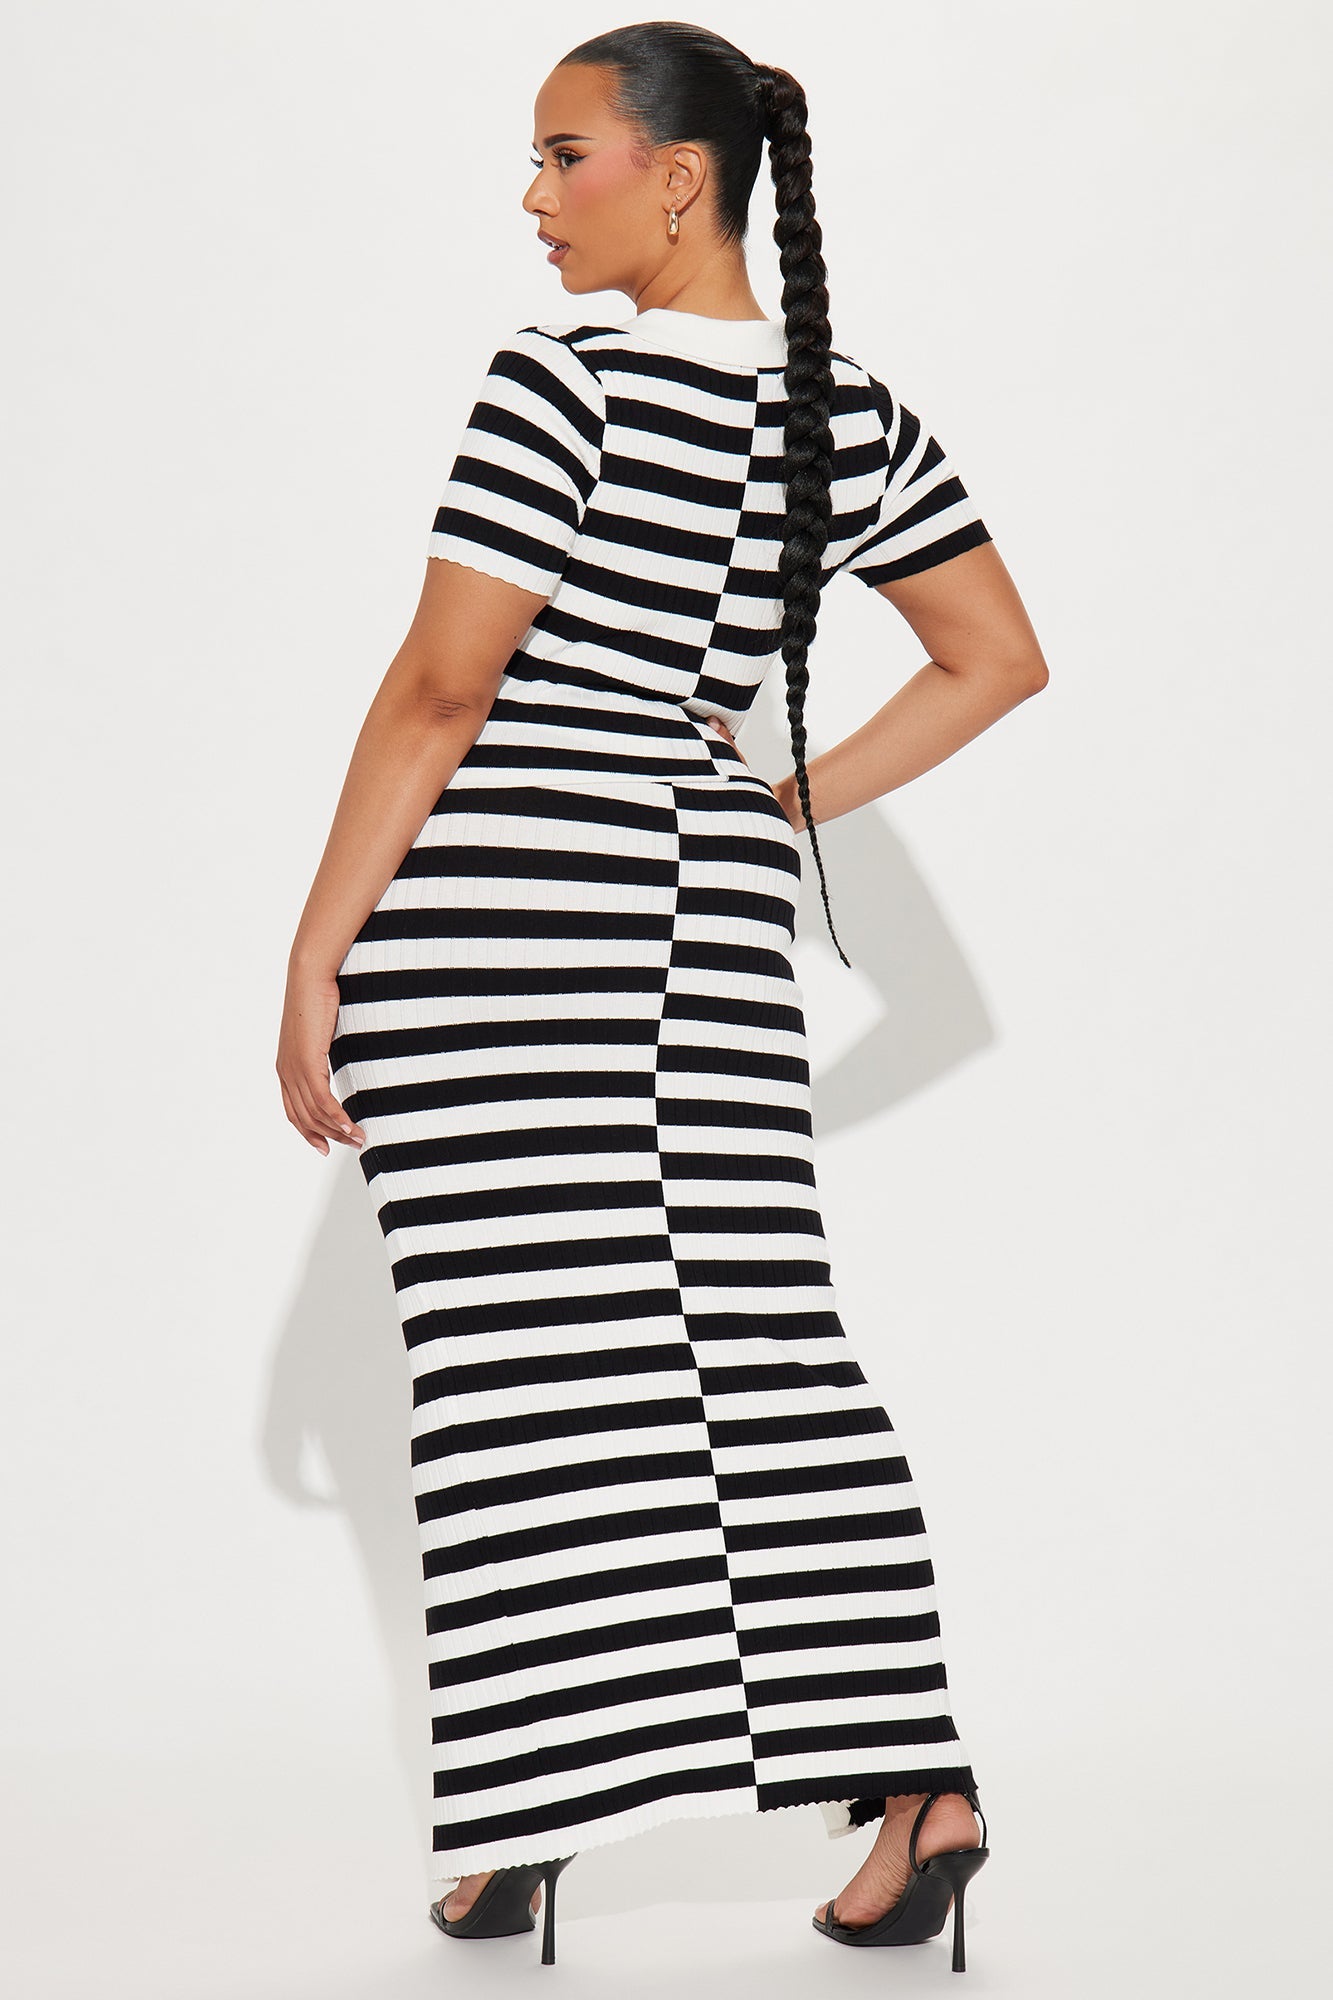 Christine Striped Skirt Set - Black/White